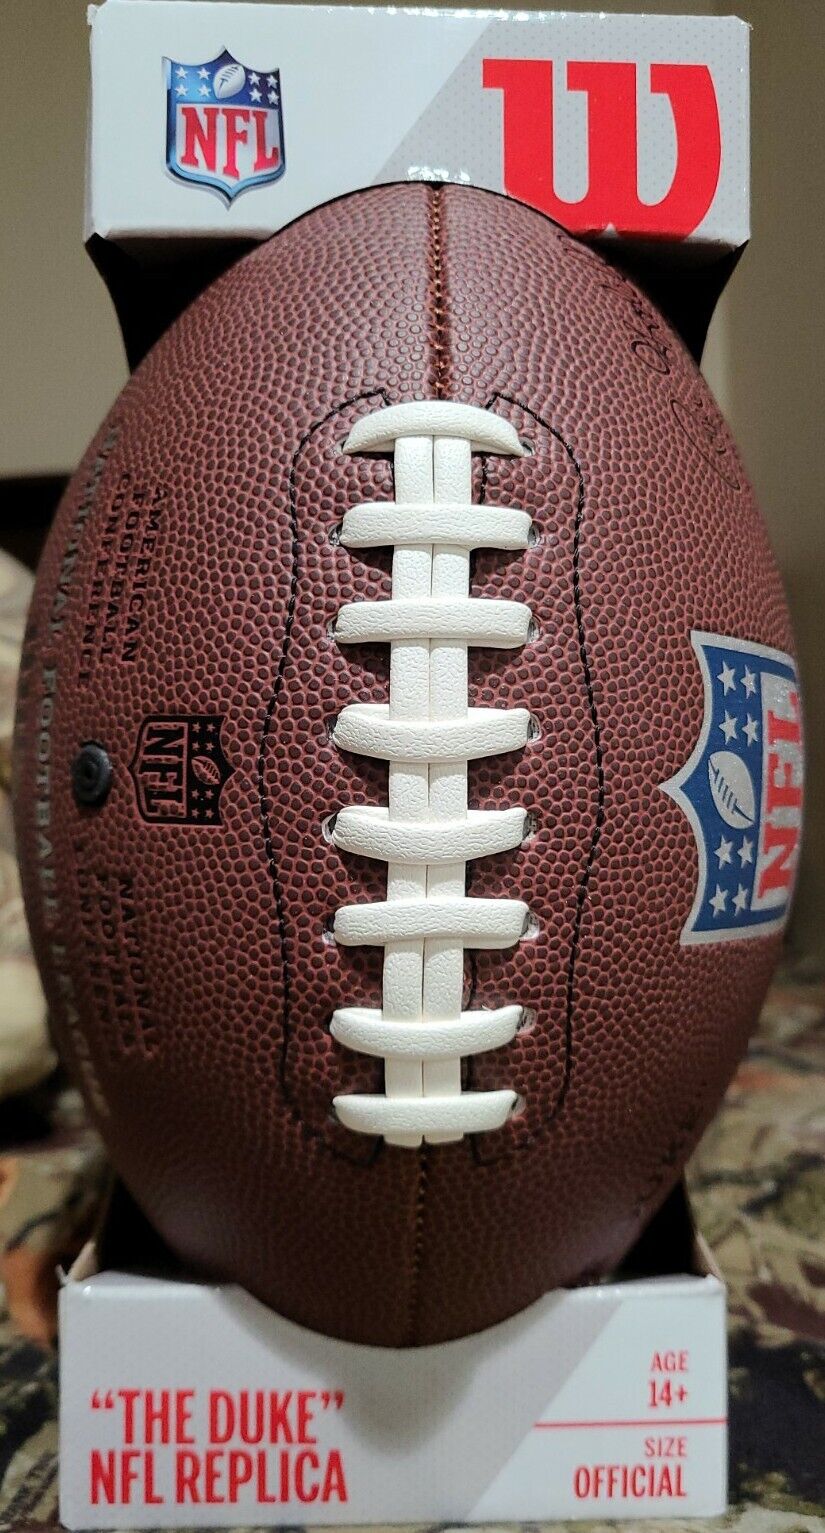 Wilson The Duke NFL Replica Ball - Official Size for sale online | eBay